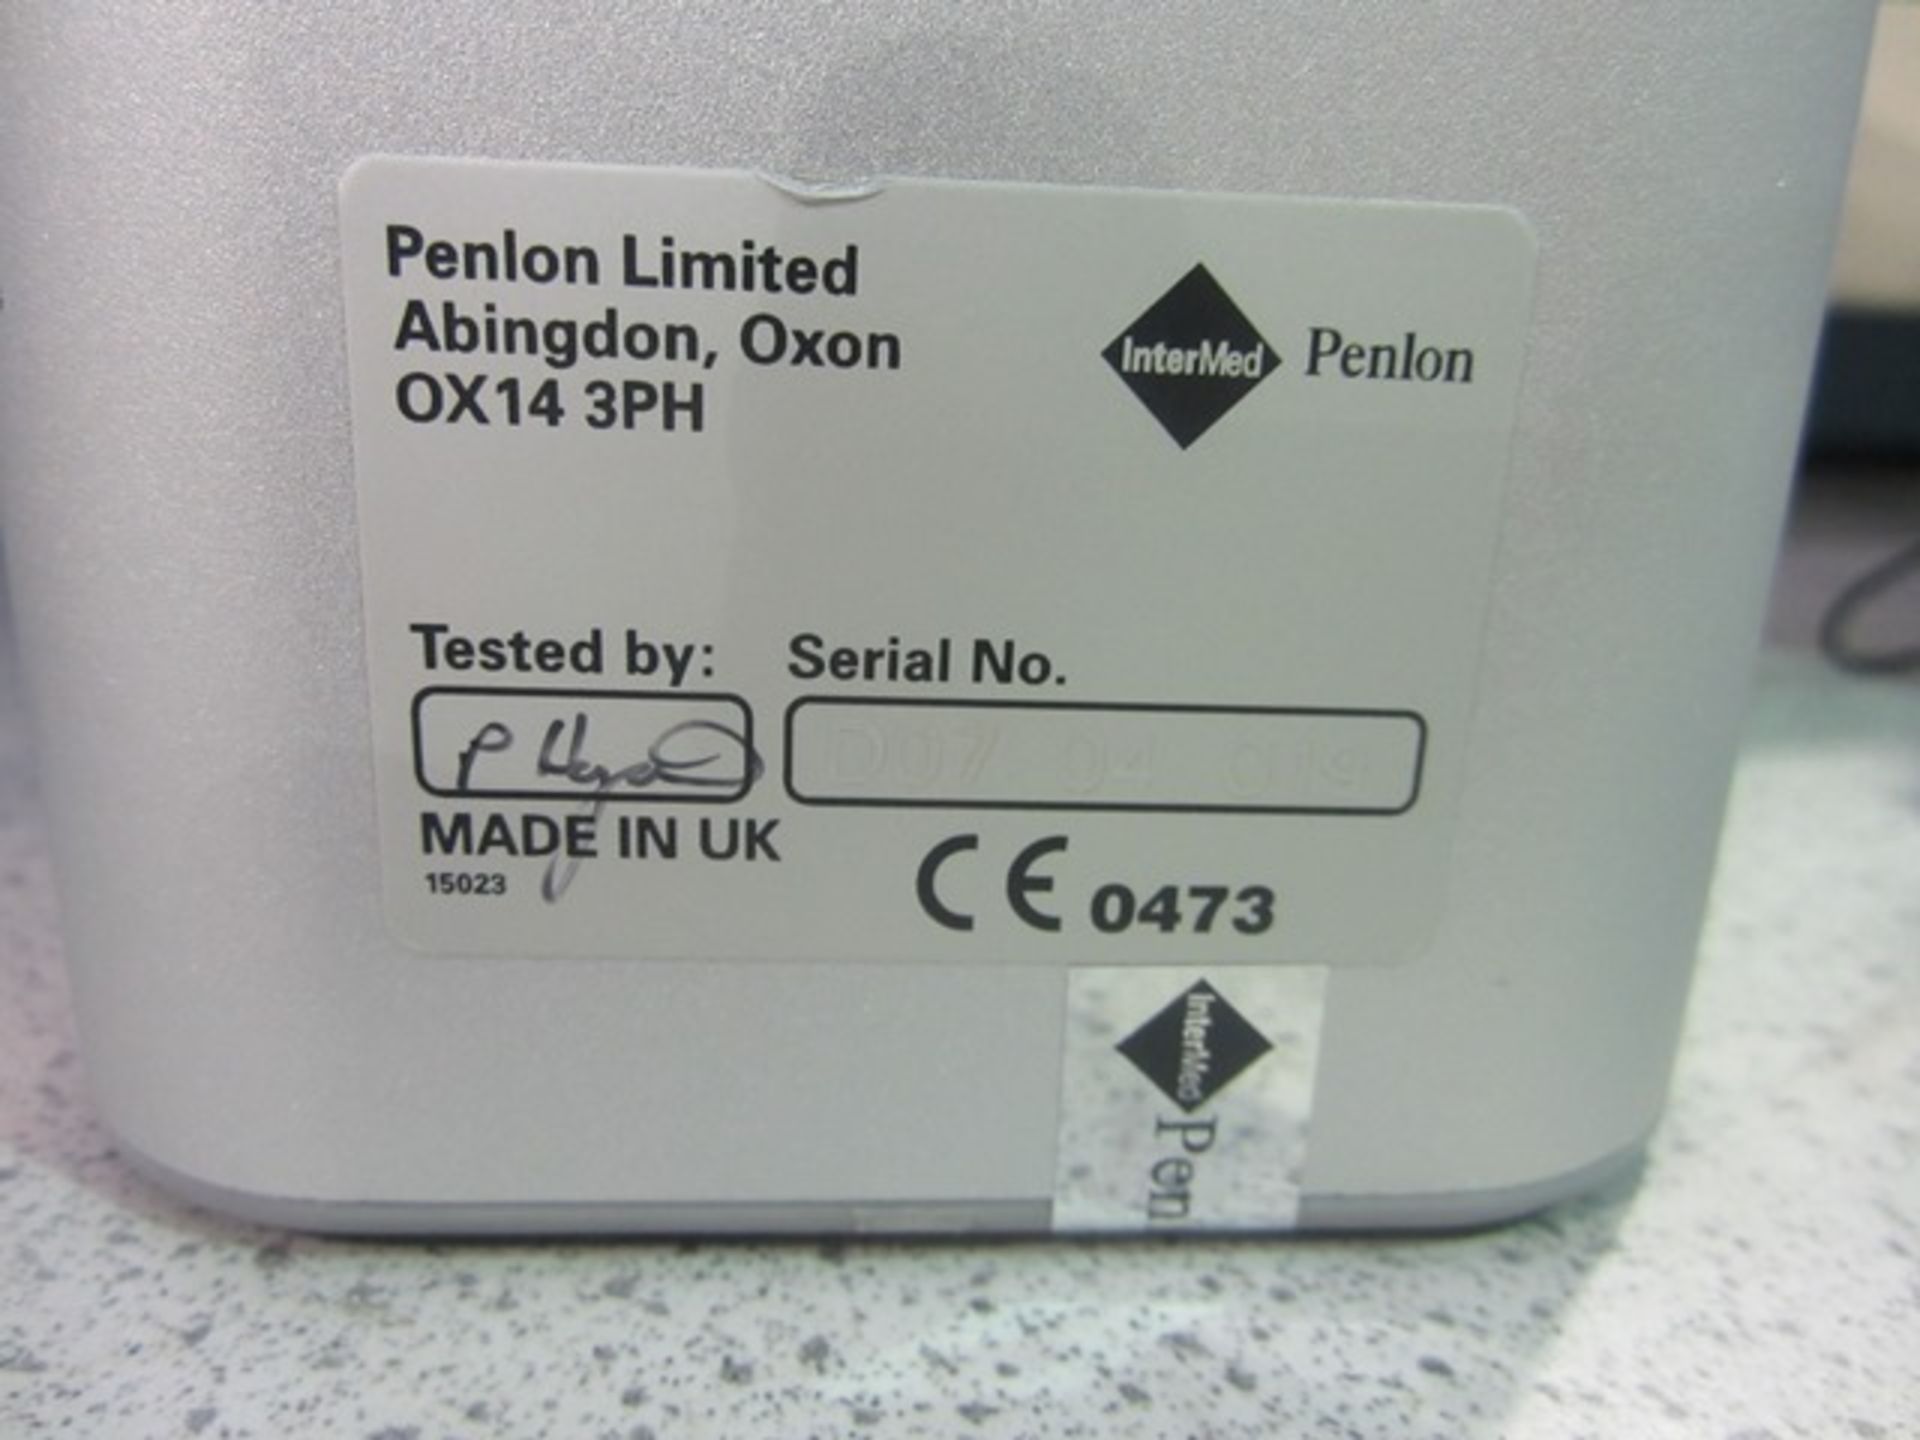 Penlon Sigma Delta Intermed vaporiser, - Image 3 of 4